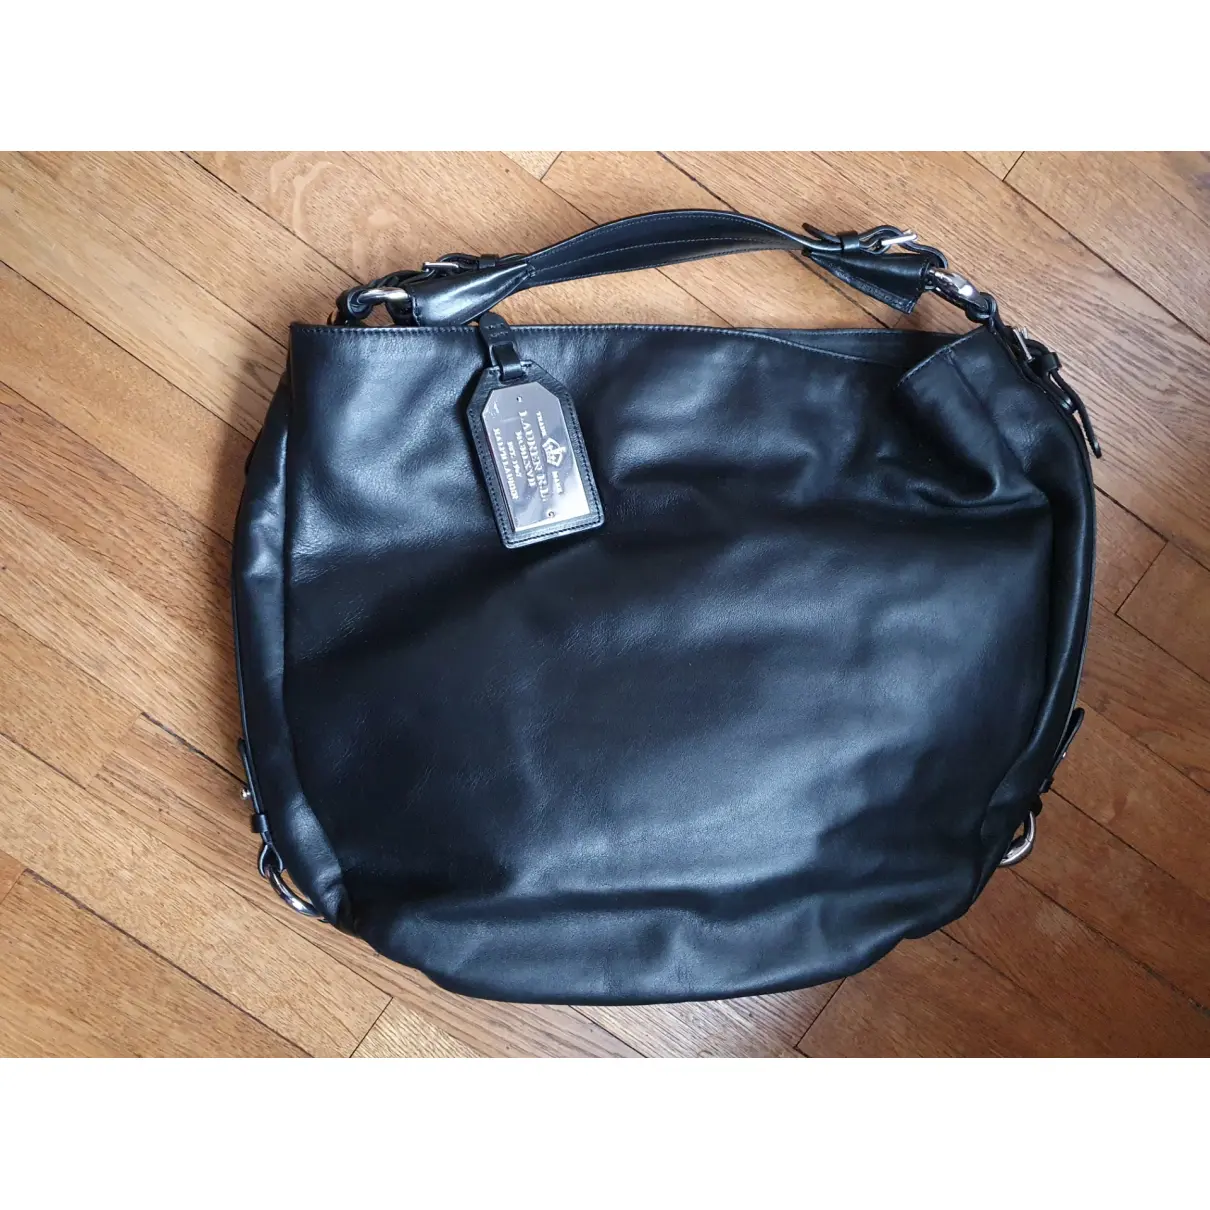 Buy Lauren Ralph Lauren Leather handbag online